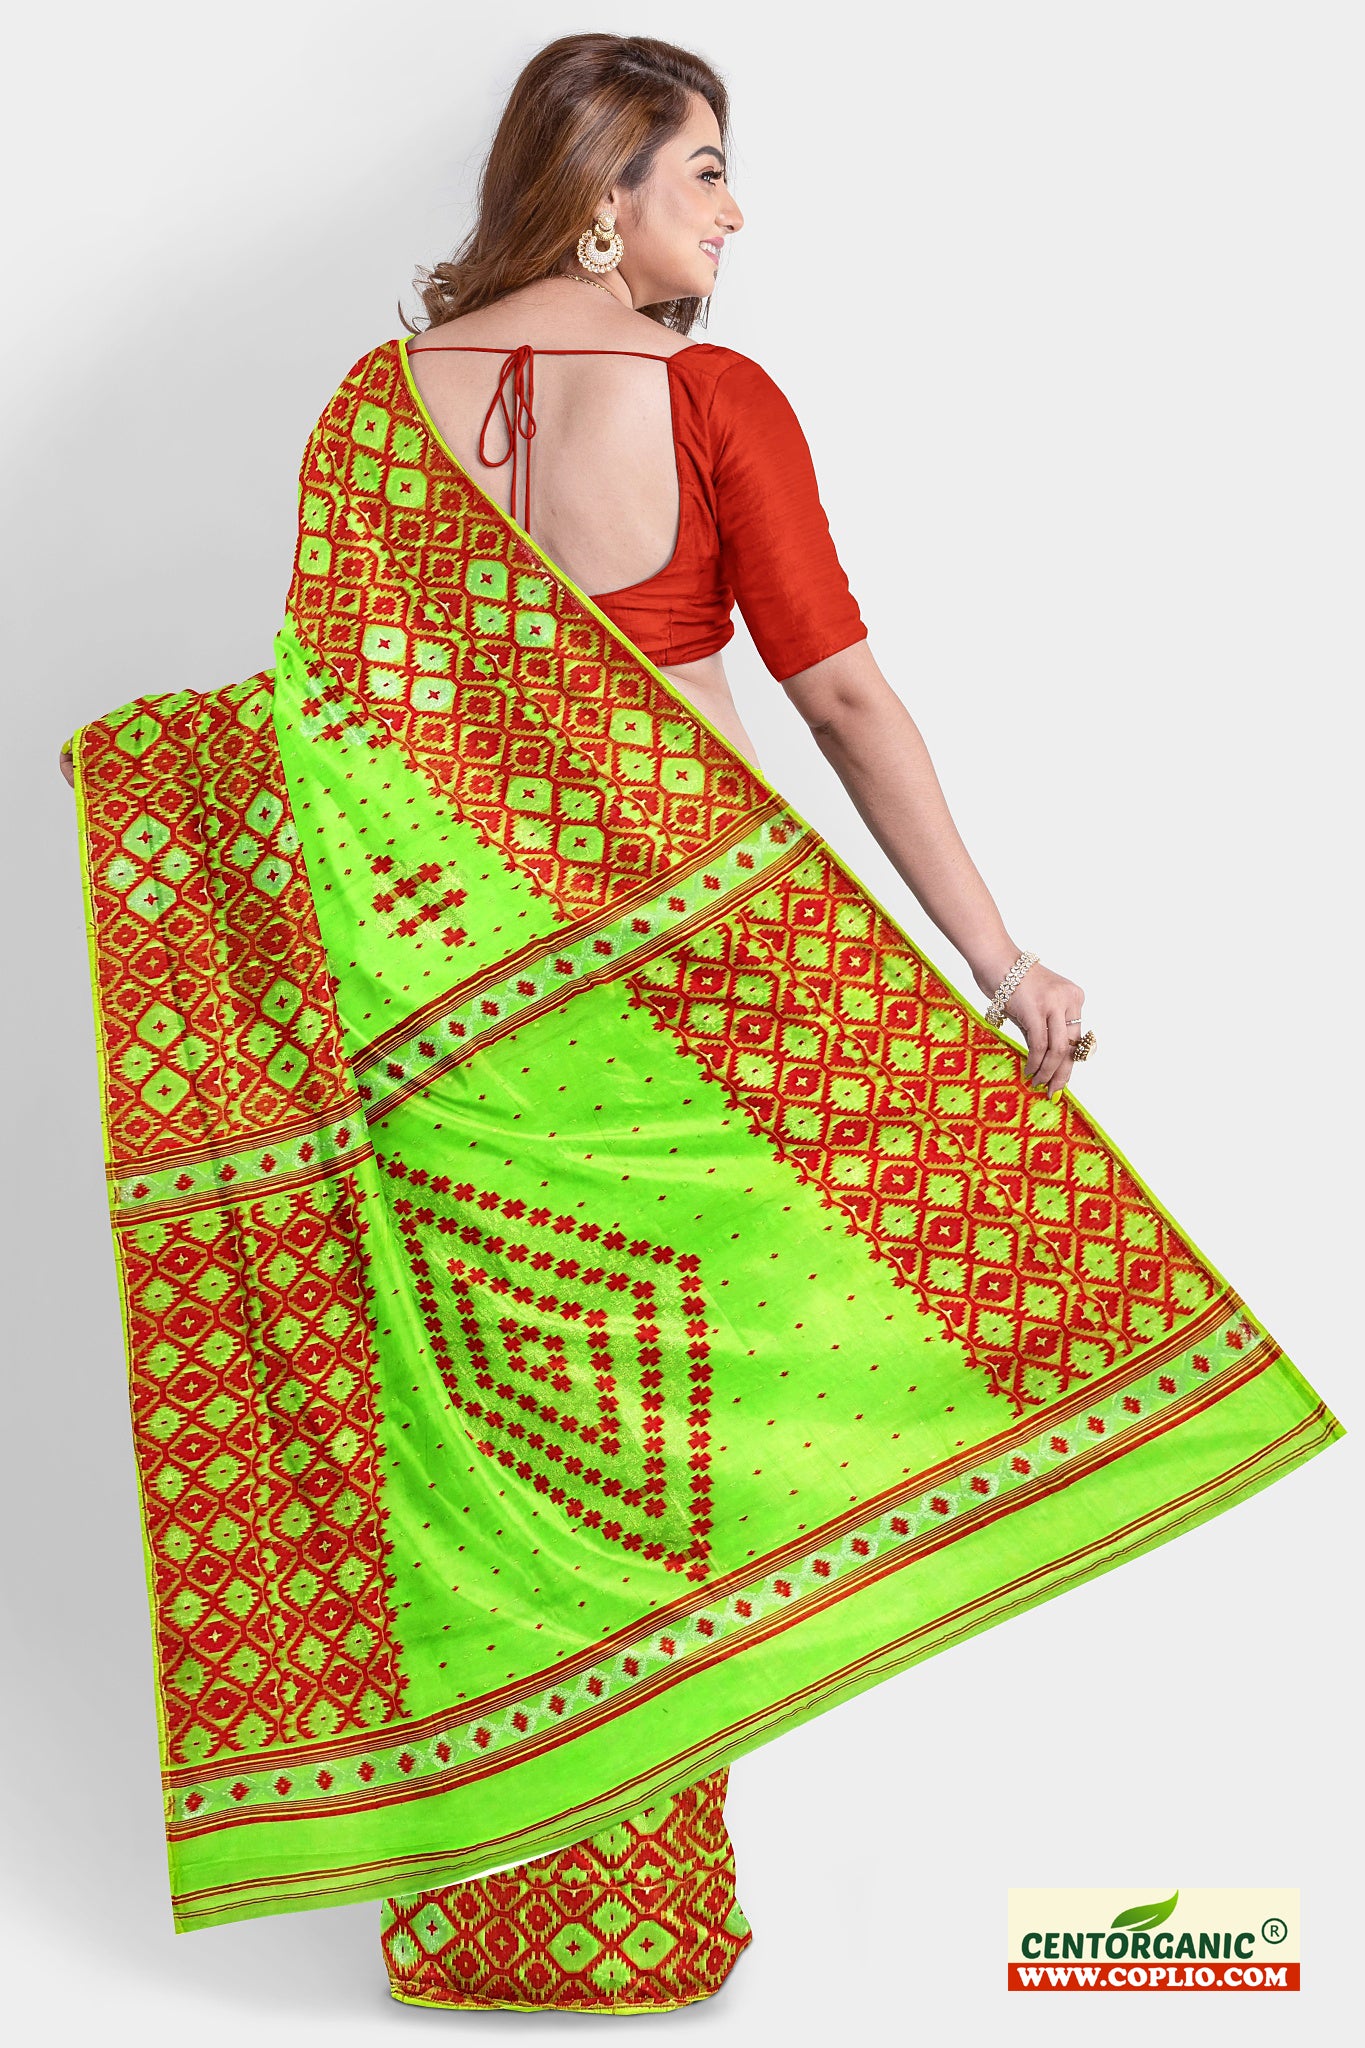 Centorganic Dhakai Soft Jamdani Bengal saree for women, All Over Weaving Barfi Design, Without Blouse Piece